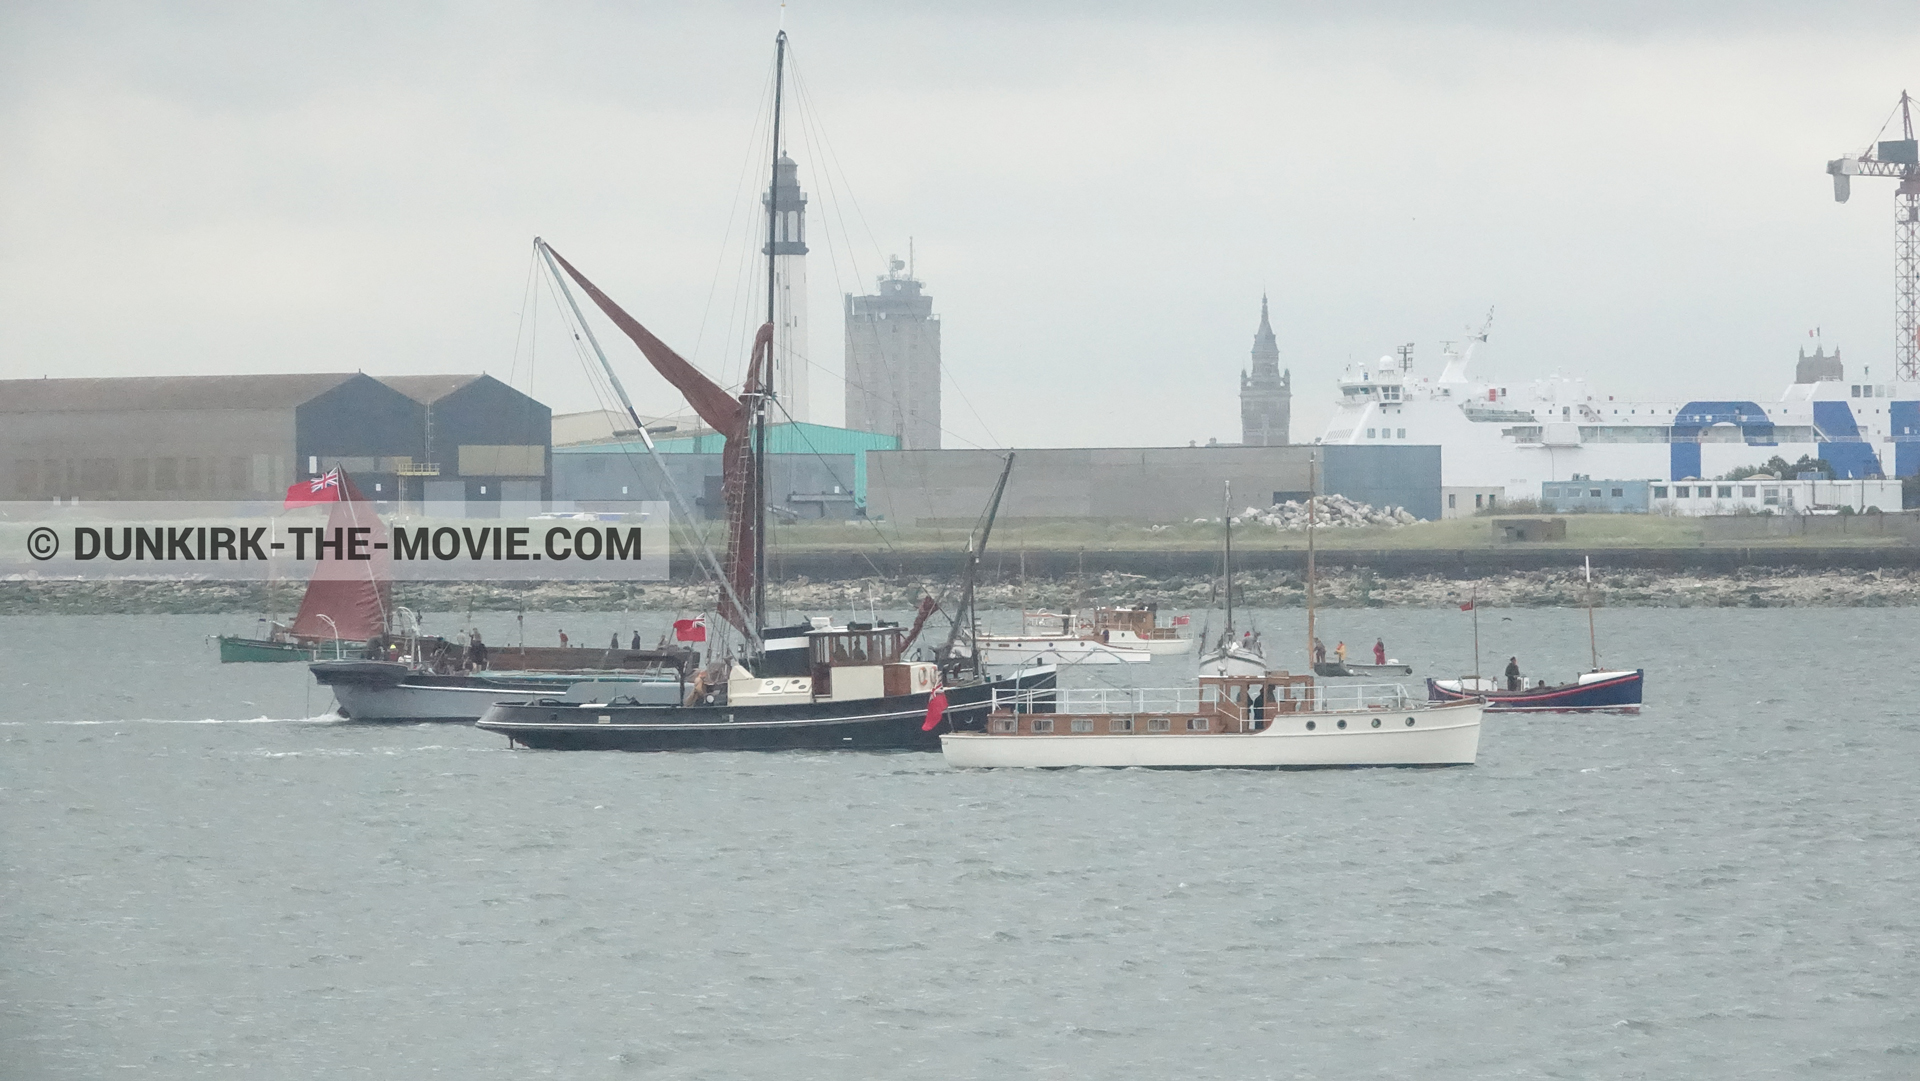 Fotos con barco, del bote salvavidas Henry Finlay, Xylonite,  durante el rodaje de la película Dunkerque de Nolan